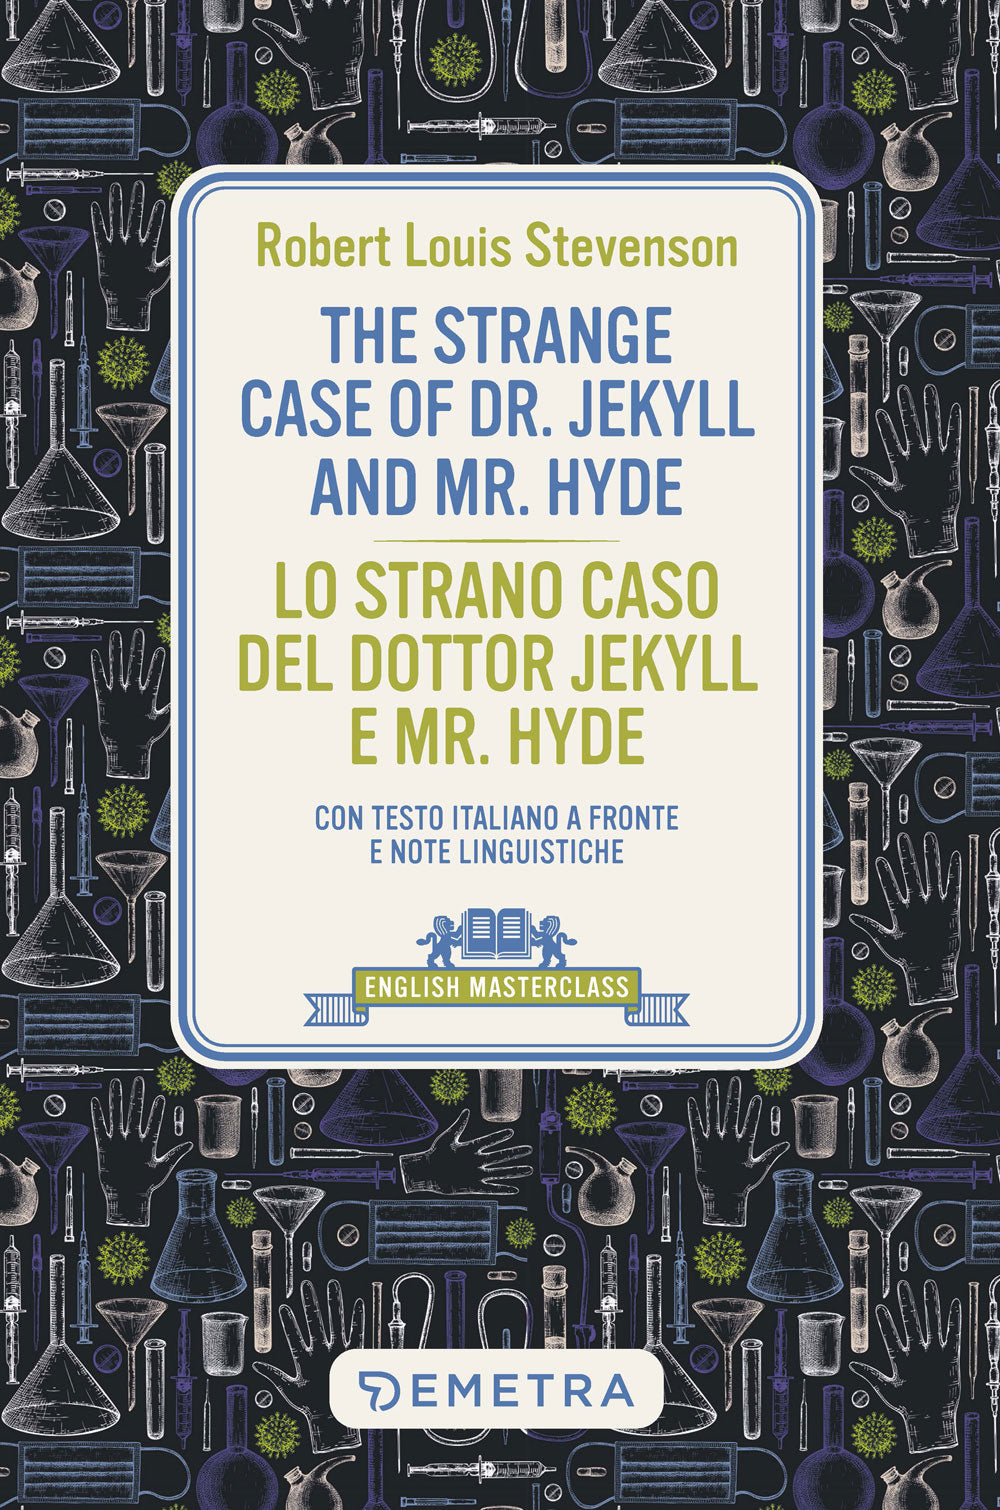 The Strange Case of Dr. Jekill and Mr. Hyde-Lo strano caso del Dr. Jekyll e Mr. Hyde. Testo italiano a fronte